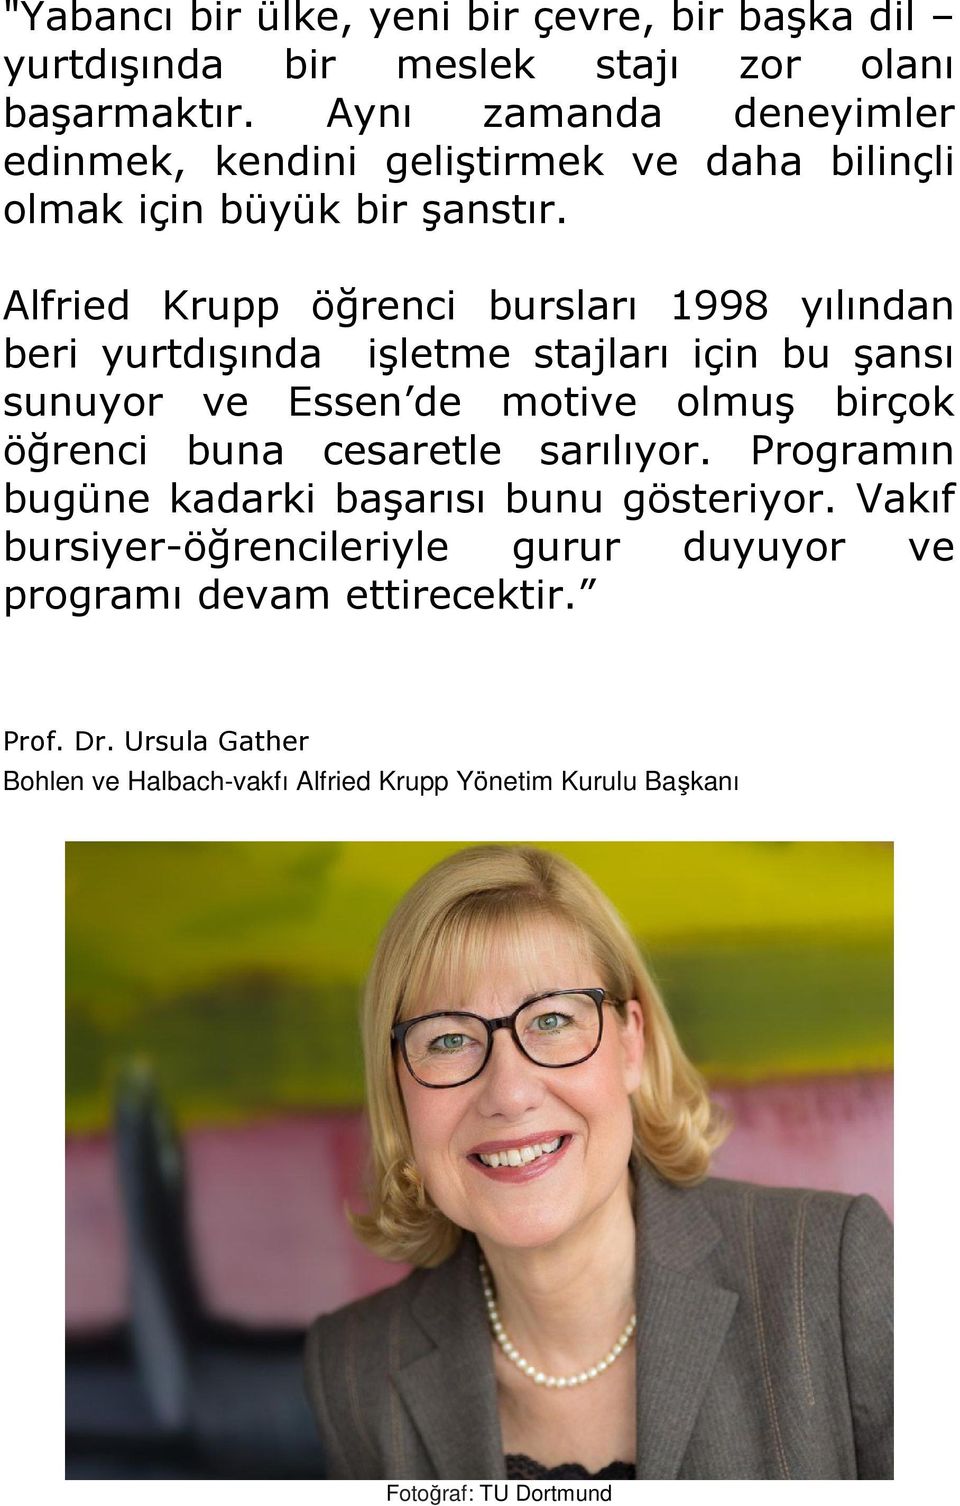 Alfried Krupp öğrenci bursları 1998 yılından beri yurtdışında işletme stajları için bu şansı sunuyor ve Essen de motive olmuş birçok öğrenci buna